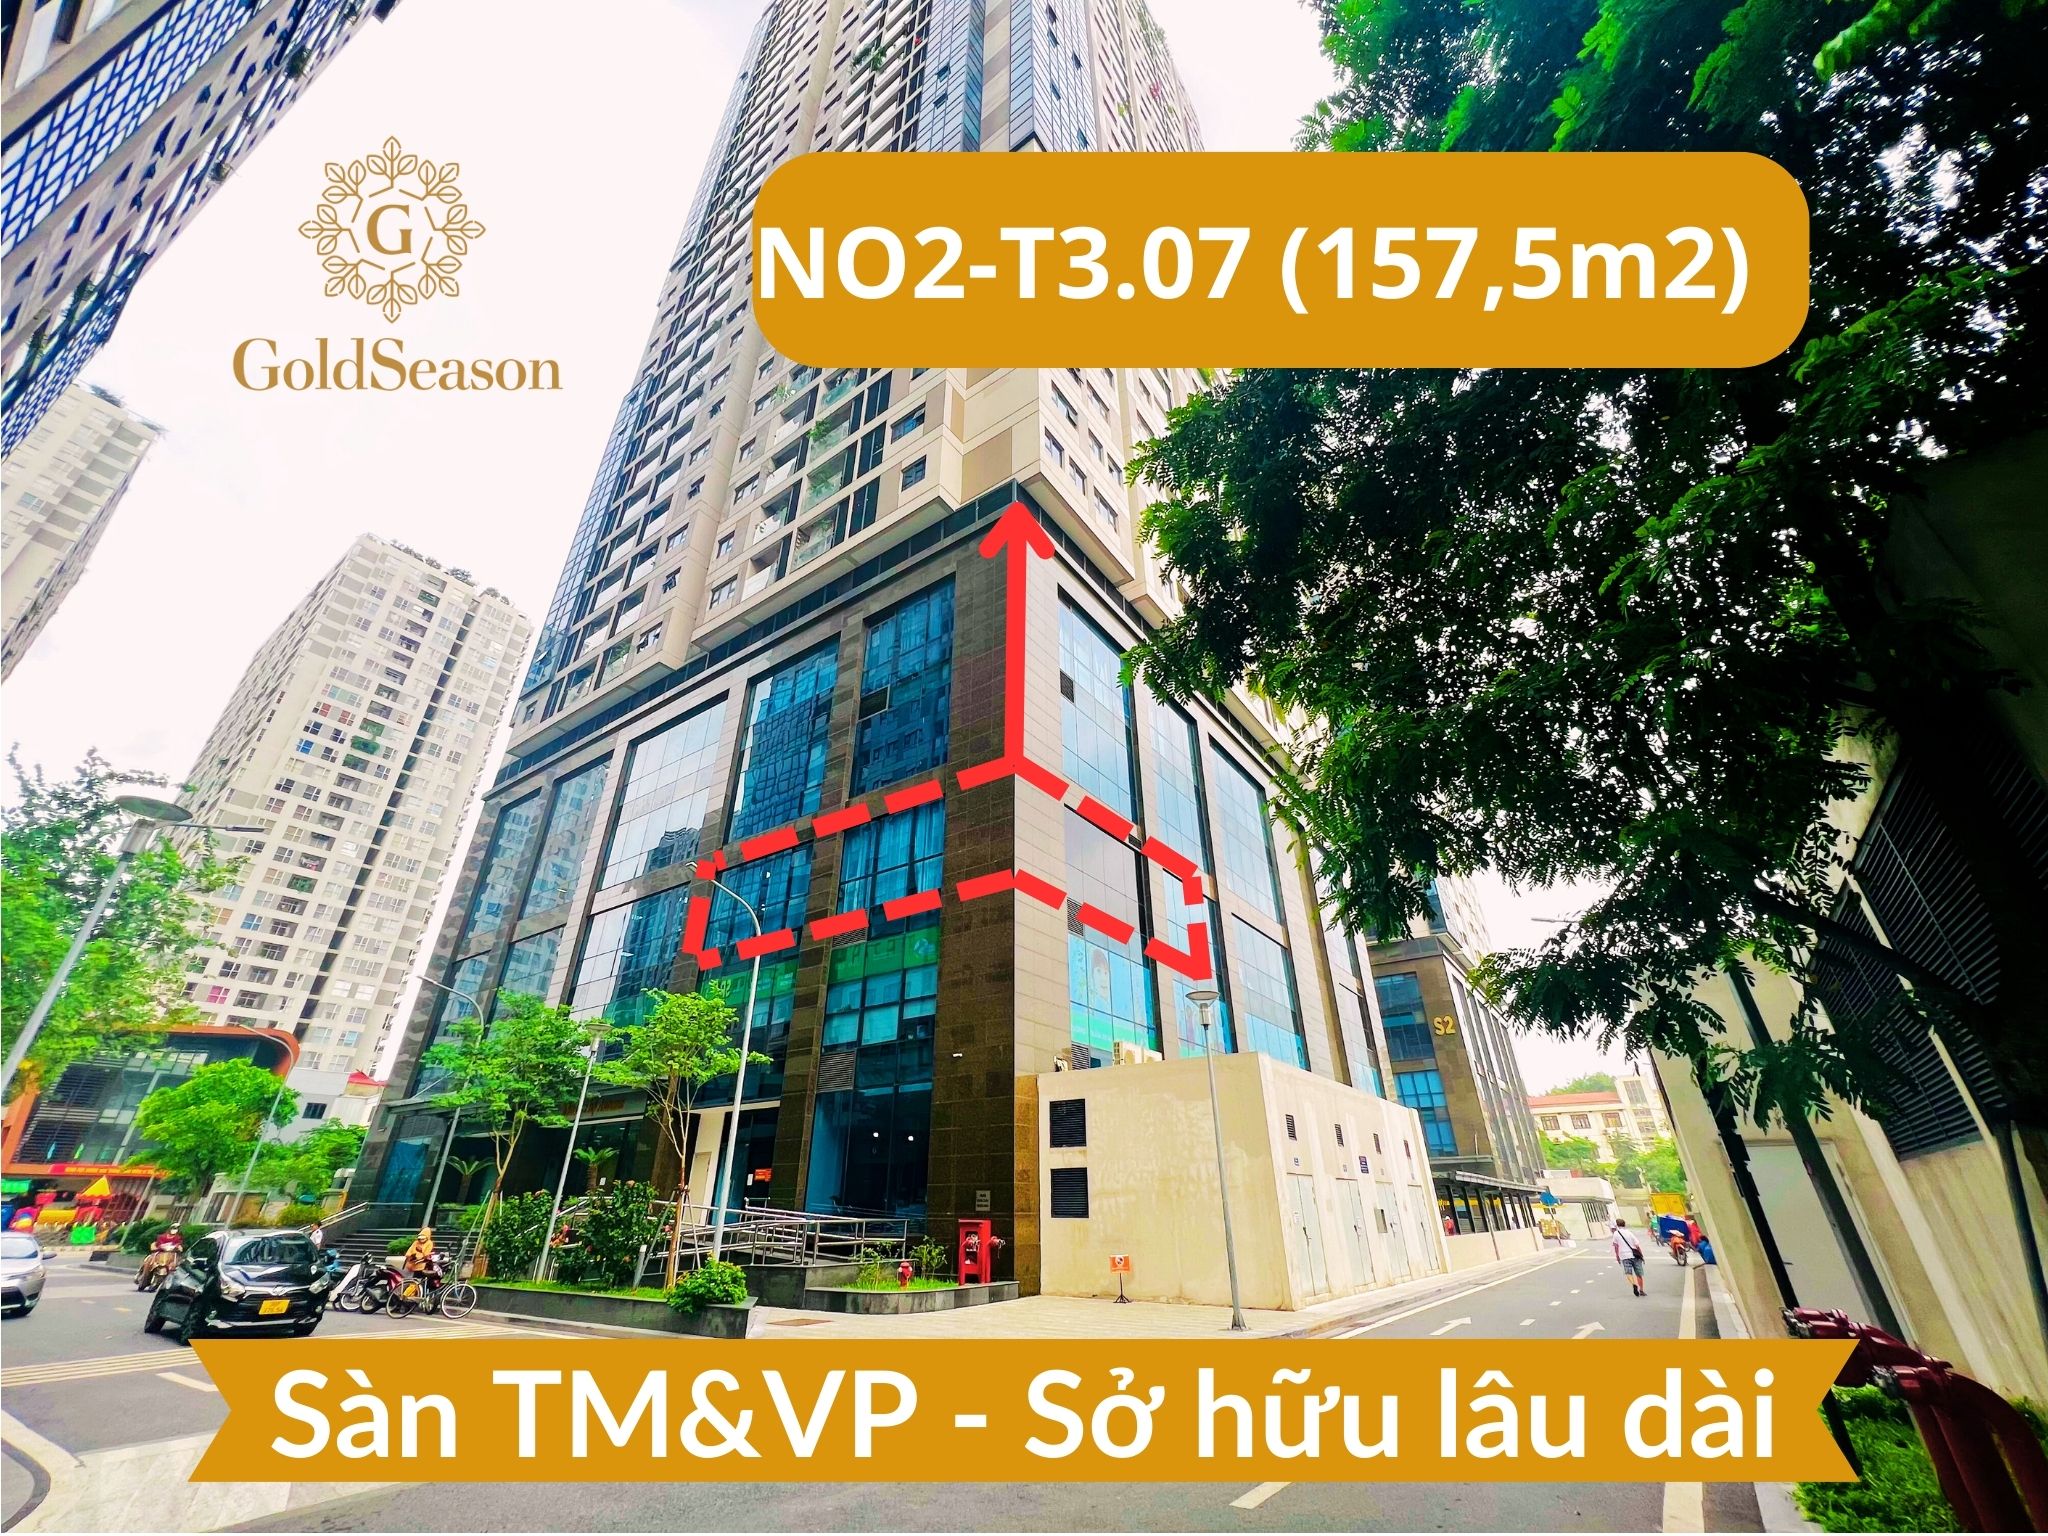 Bán gấp lô góc sàn văn phòng 157,5m2 - Sở hữu lâu dài đỉnh nhất quận Thanh Xuân tiền thuê 470/năm 1